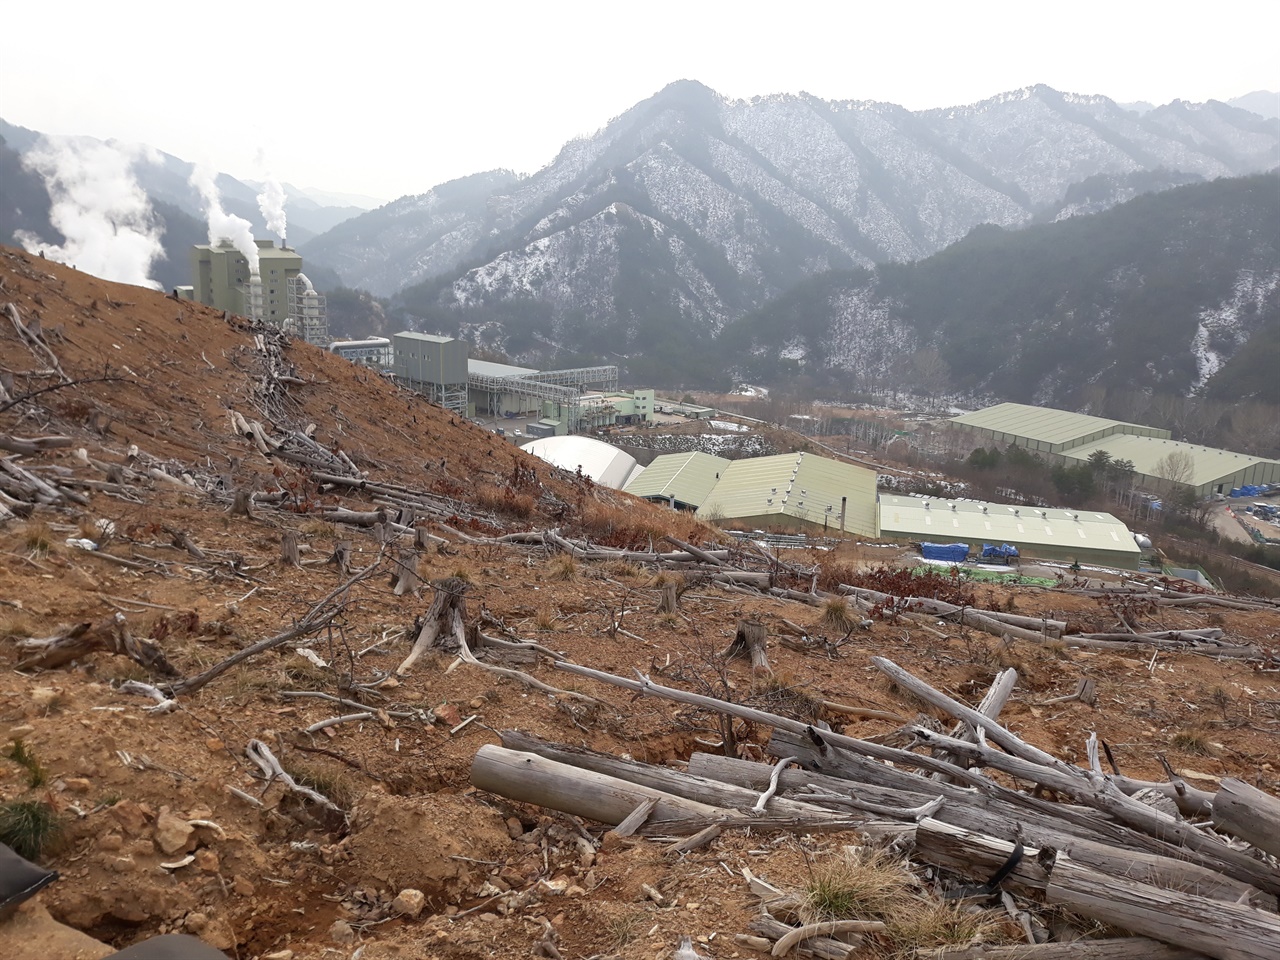 2018년 11월의 굴티공장(석포제련소 3공장). 공장 뒷산에 고사한 나무들이 버려져 있다. 굴티마을 주민이 떠난 자리에 3공장이 새로 들어섰다.